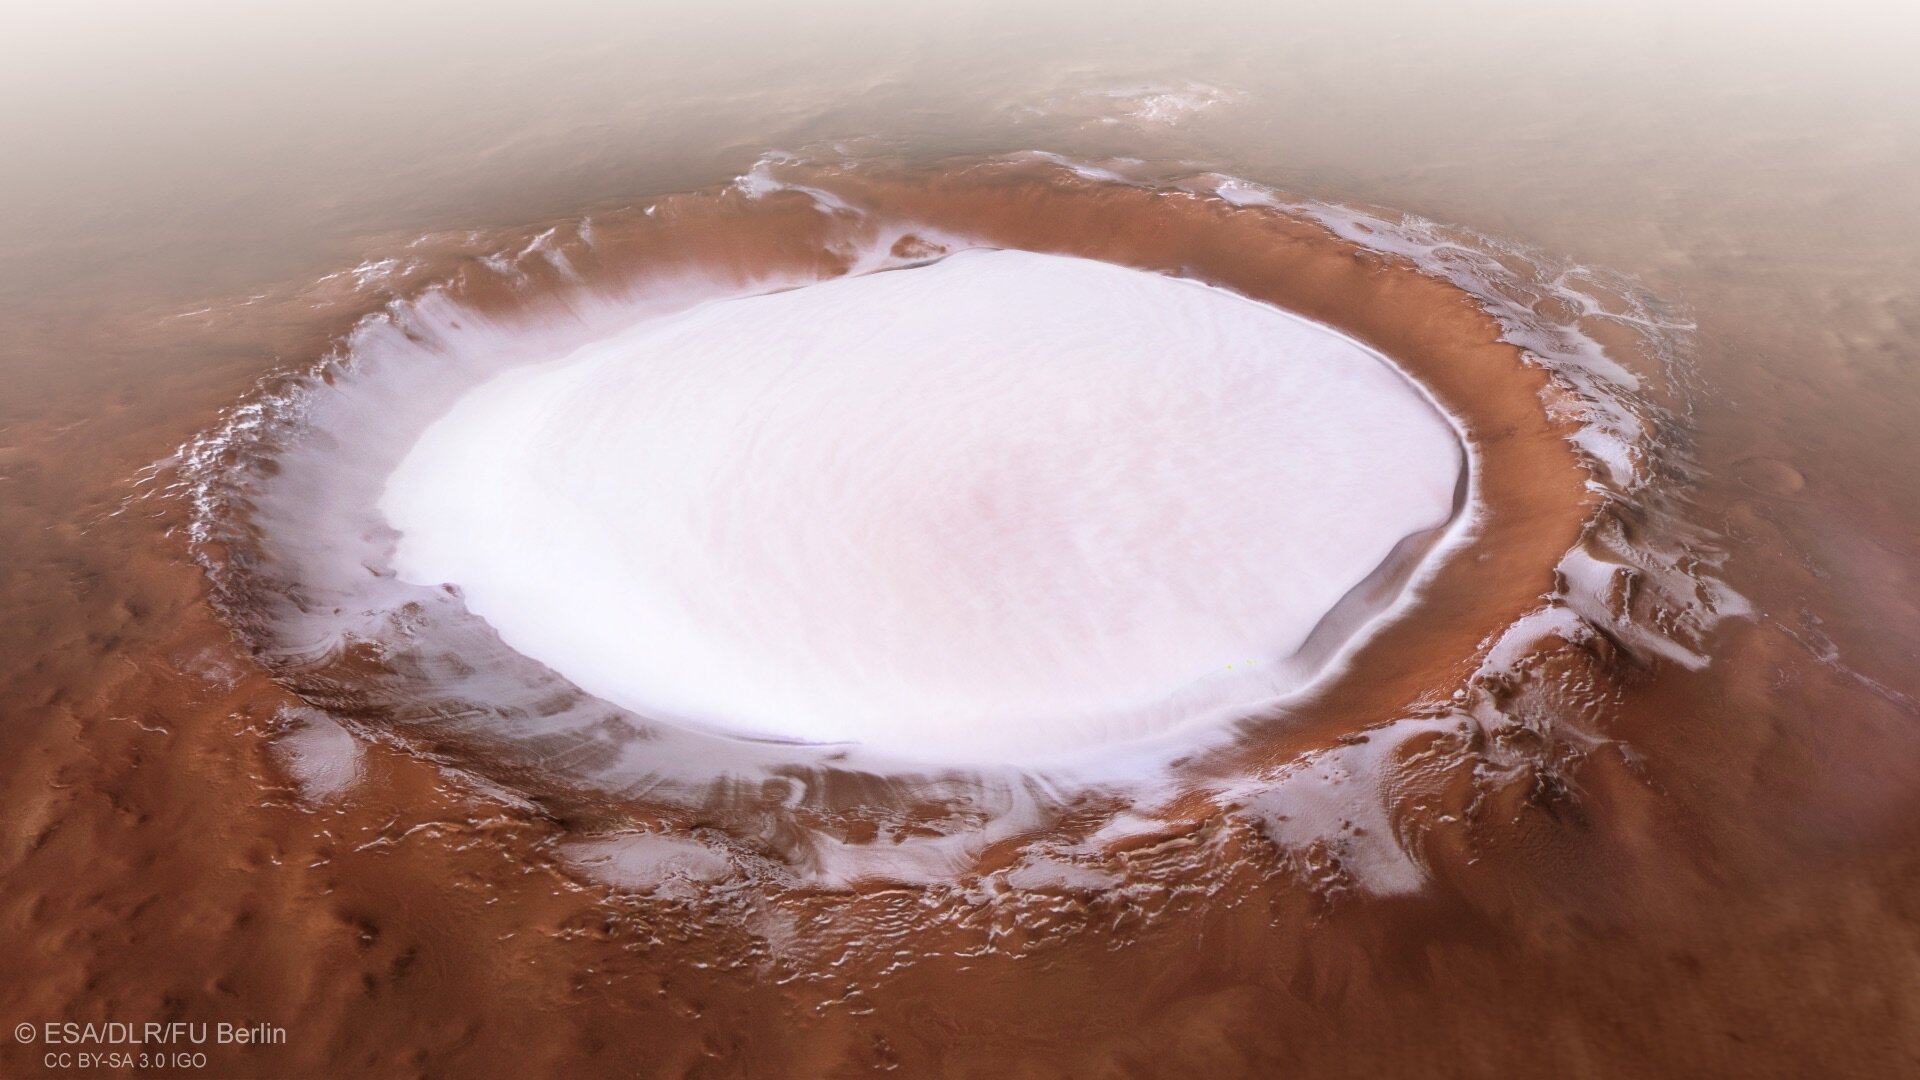 火星の氷が張ったクレーター上を、飛んでいるかのように眺められる美映像の画像 1/5